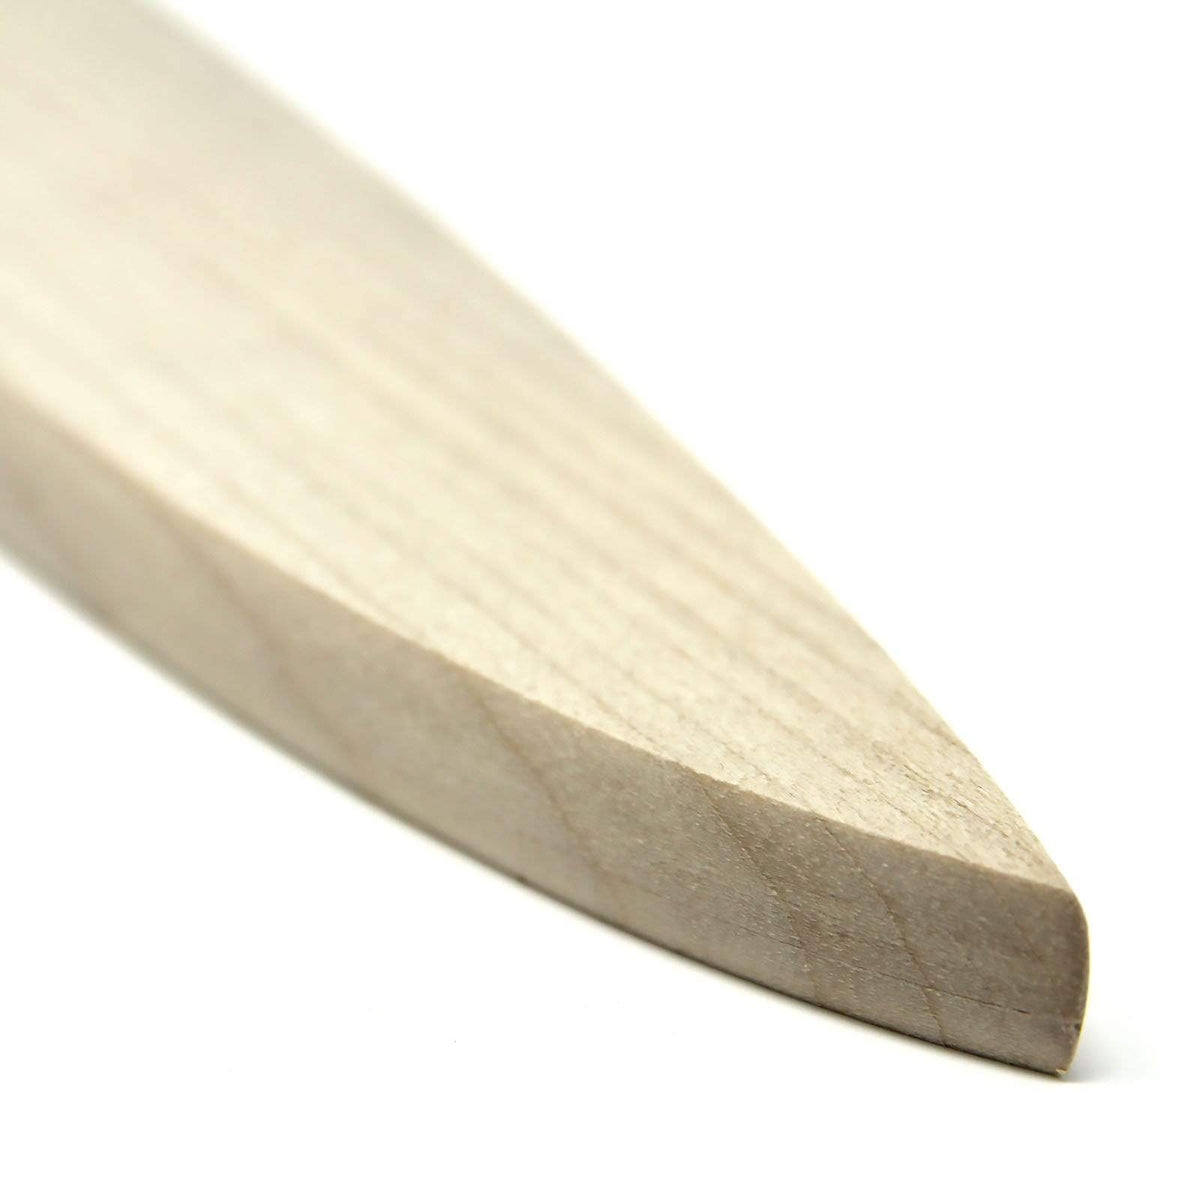 Universal Wooden Saya Kitchen Knife Sheath for Sujihiki Knife Sheaths